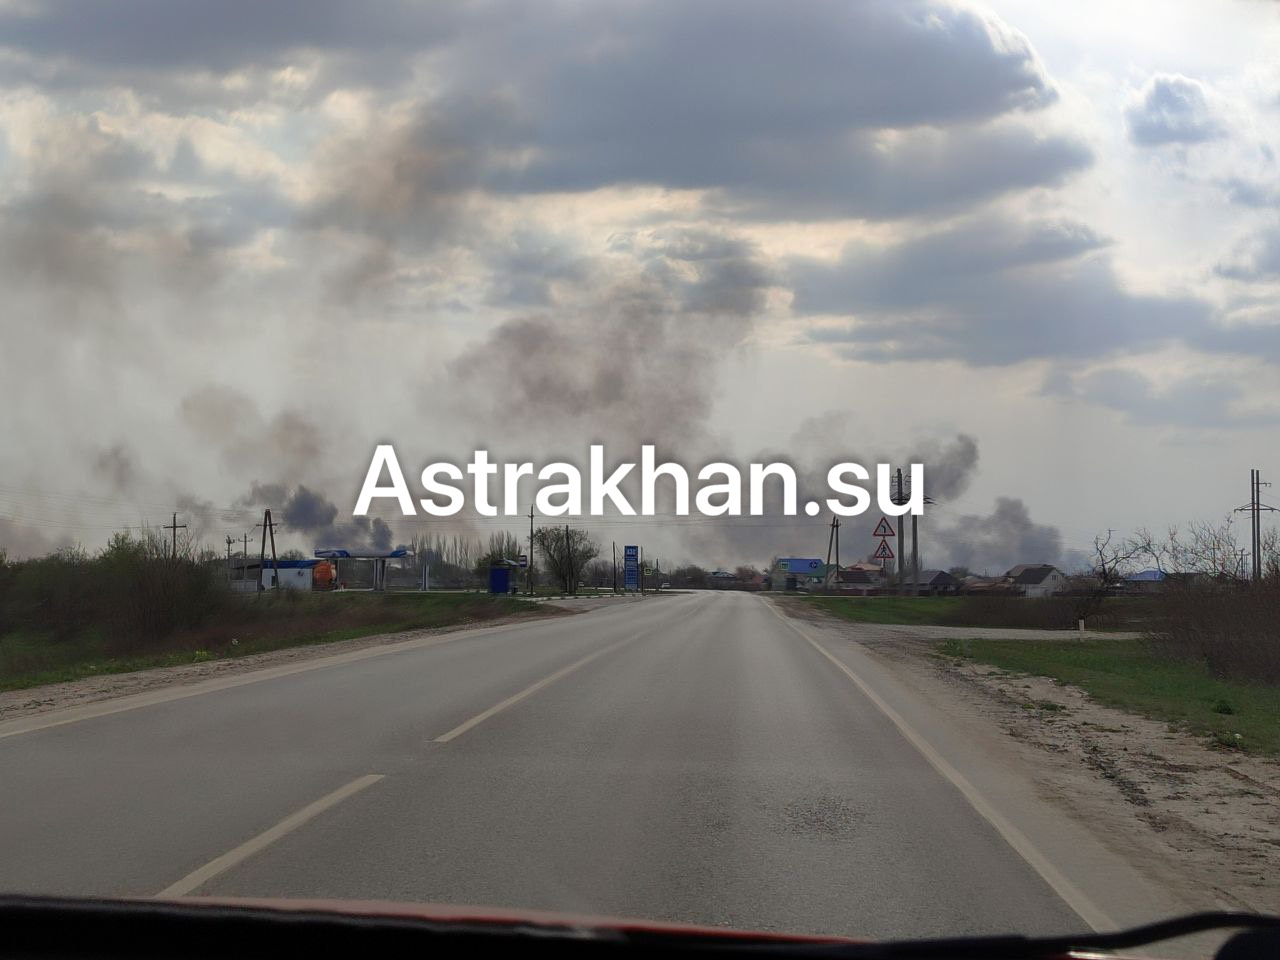 В Икрянинском районе Астраханской области полыхает серьезный пожар